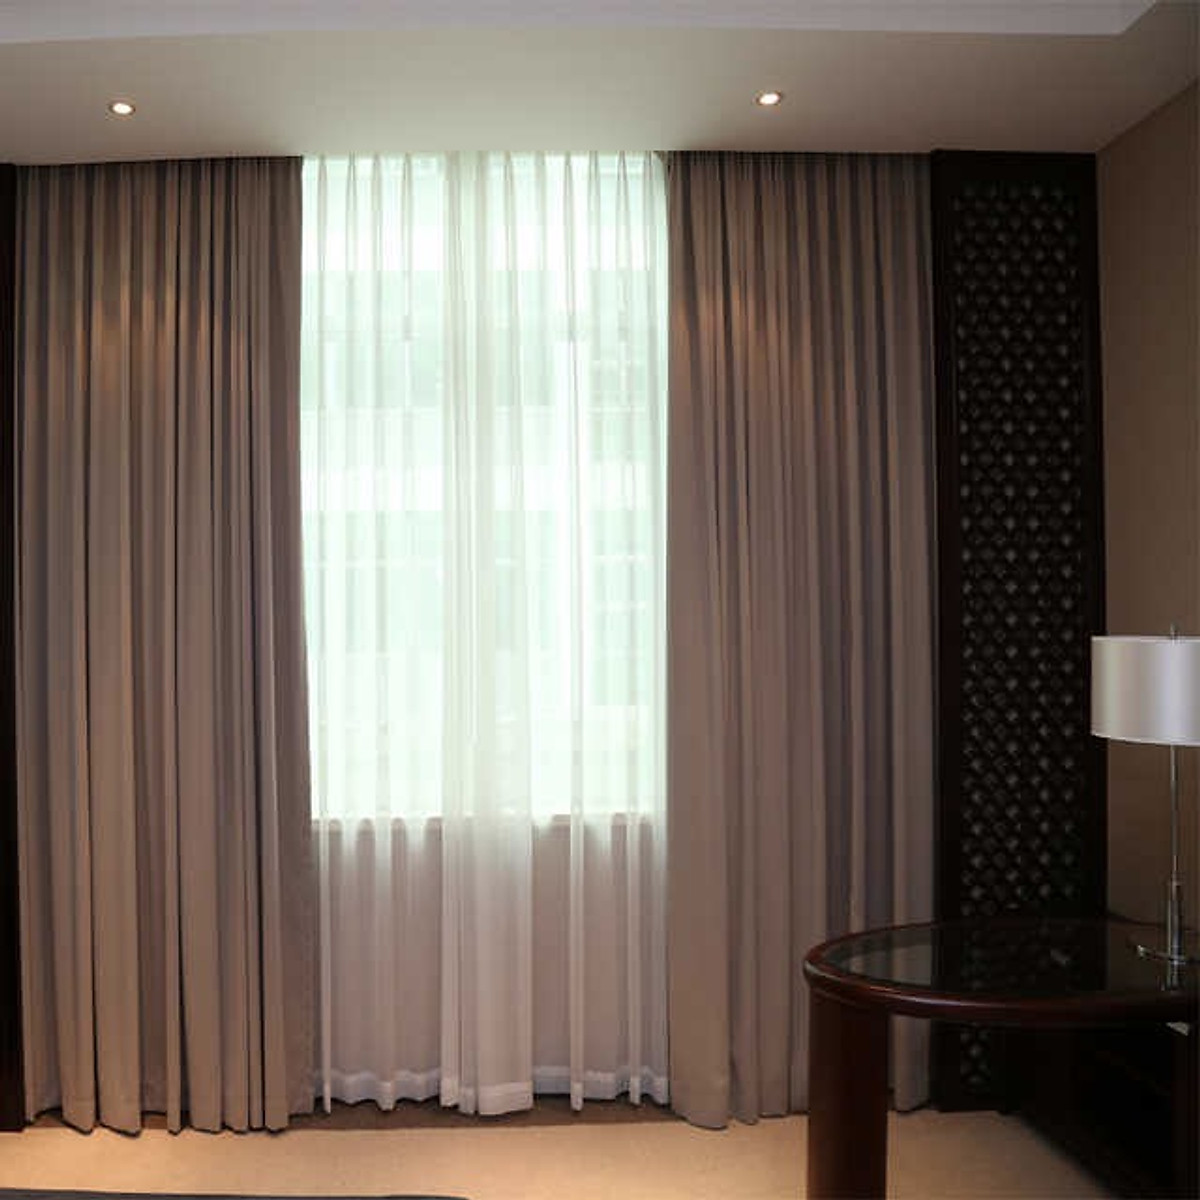 Những chiếc rèm cửa chống nắng hiện đại được sản xuất với chất liệu chuyên dụng giúp chắn tia UV, giúp hạn chế nhiệt độ bên trong phòng, giúp tiết kiệm điện hiệu quả. Ngoài ra, chúng còn giúp cho không gian sống của bạn trở nên sang trọng, tạo nên sự riêng tư và êm ái cho căn nhà của bạn.